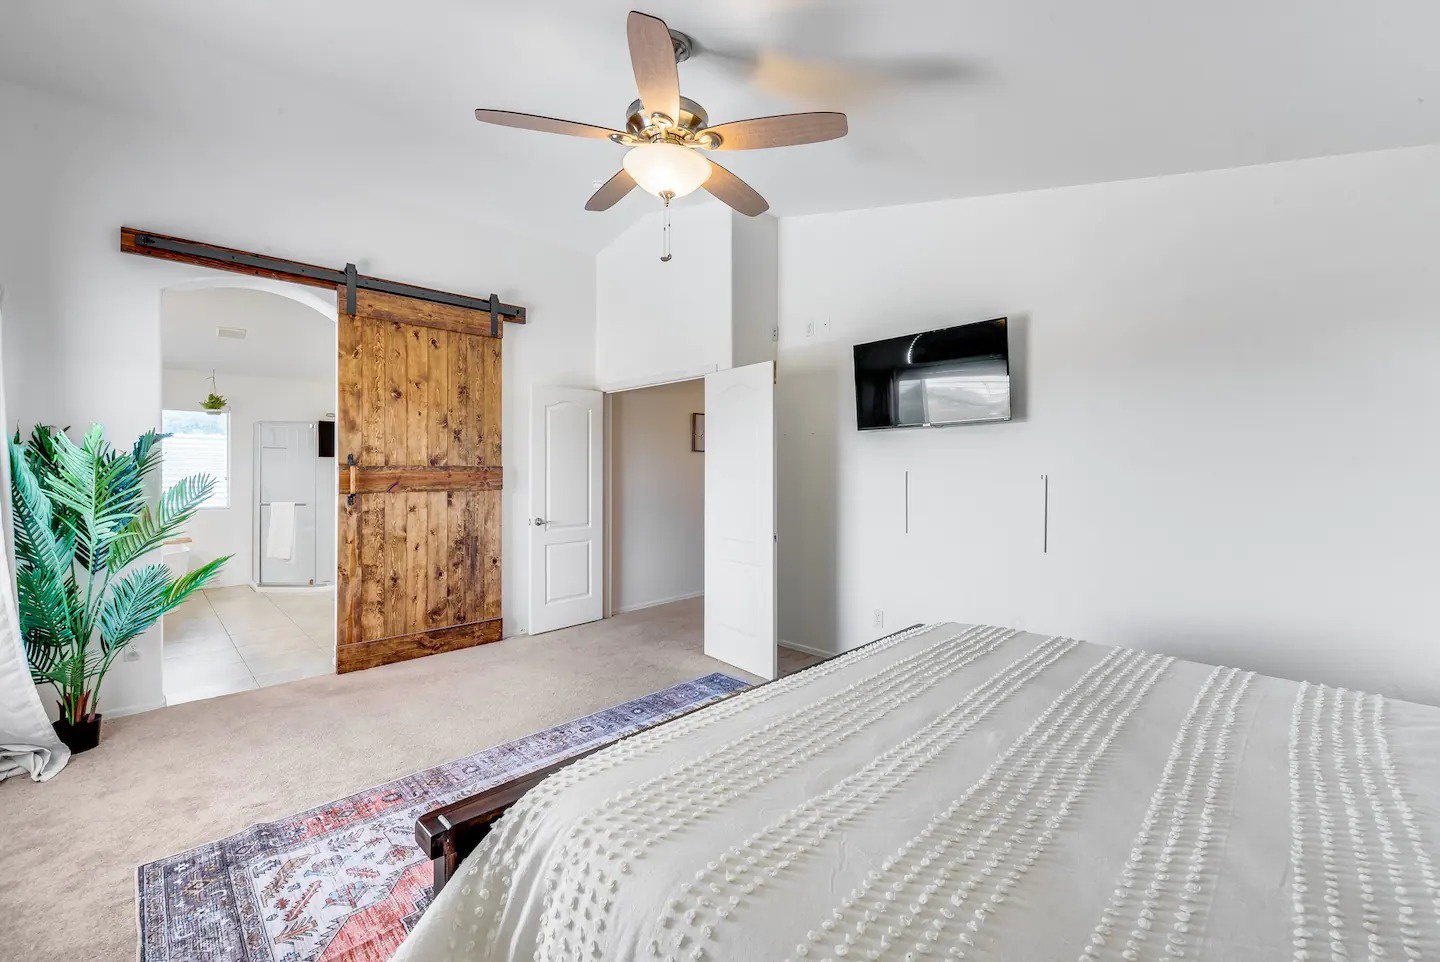 Peoria Vacation Rentals, Cherry Hills - Barn door separates bedroom from ensuite bathroom